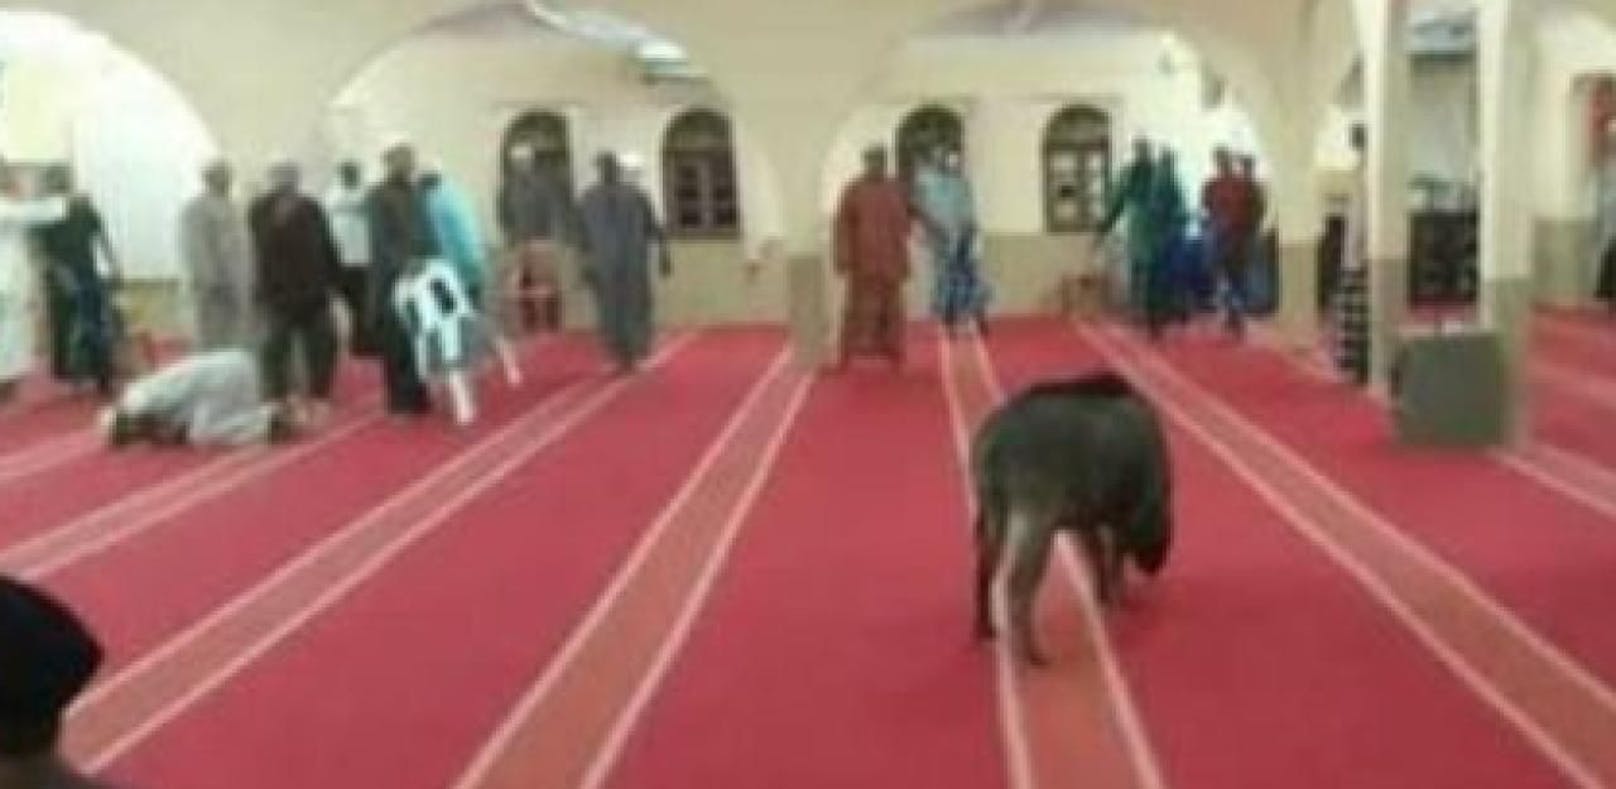 Wildschwein attackiert Gläubige in Moschee